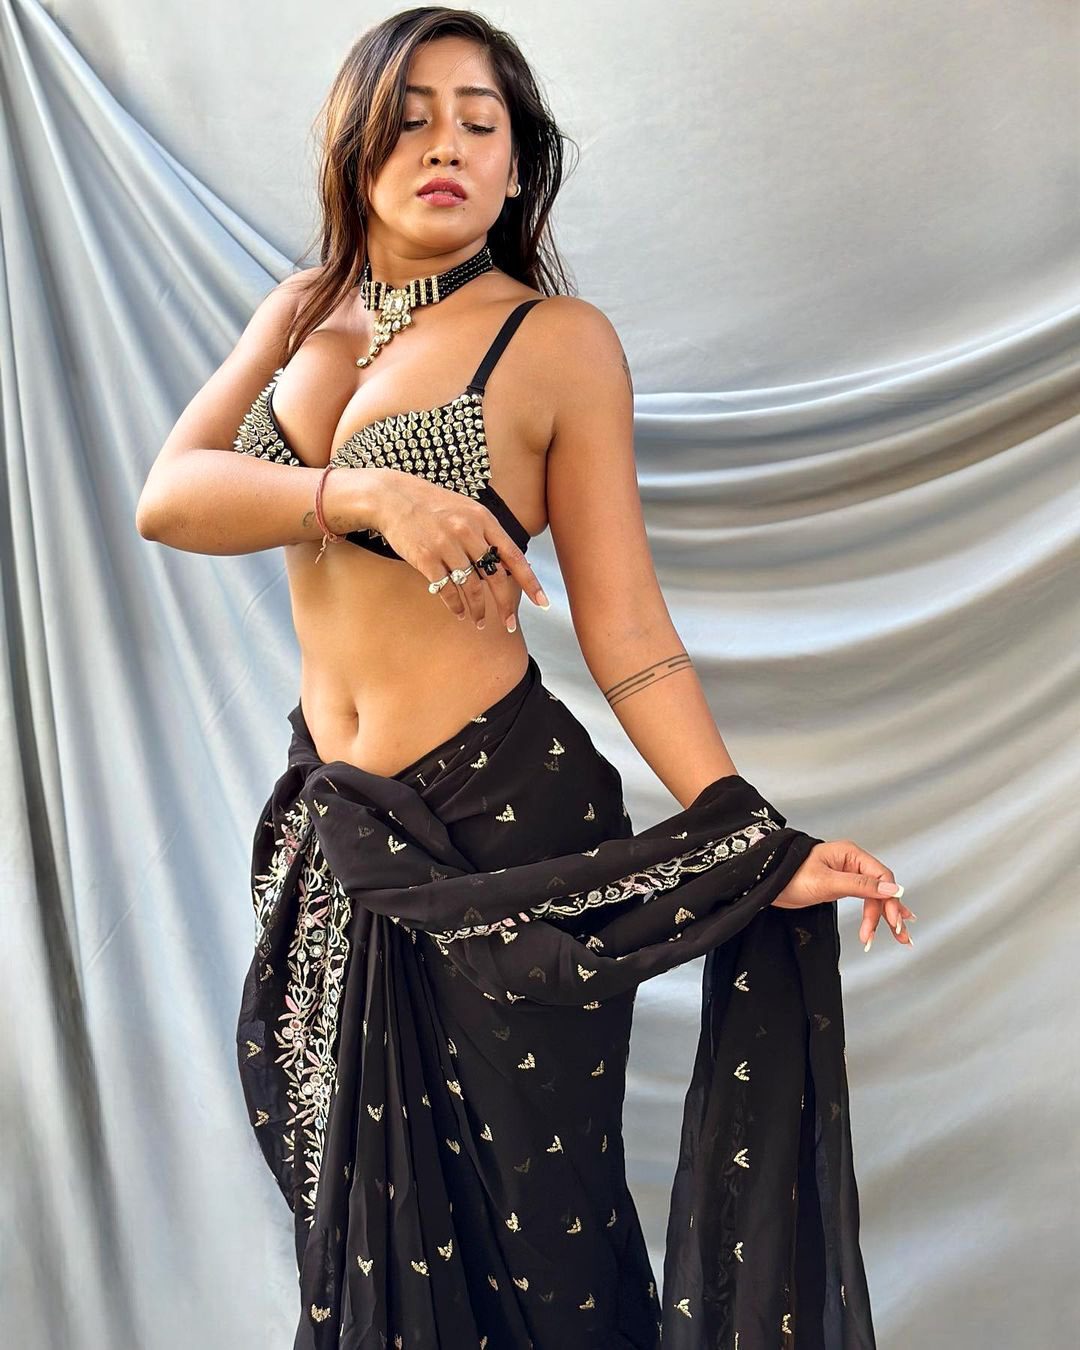 Sofia dropped her saree pallu while clicking photos